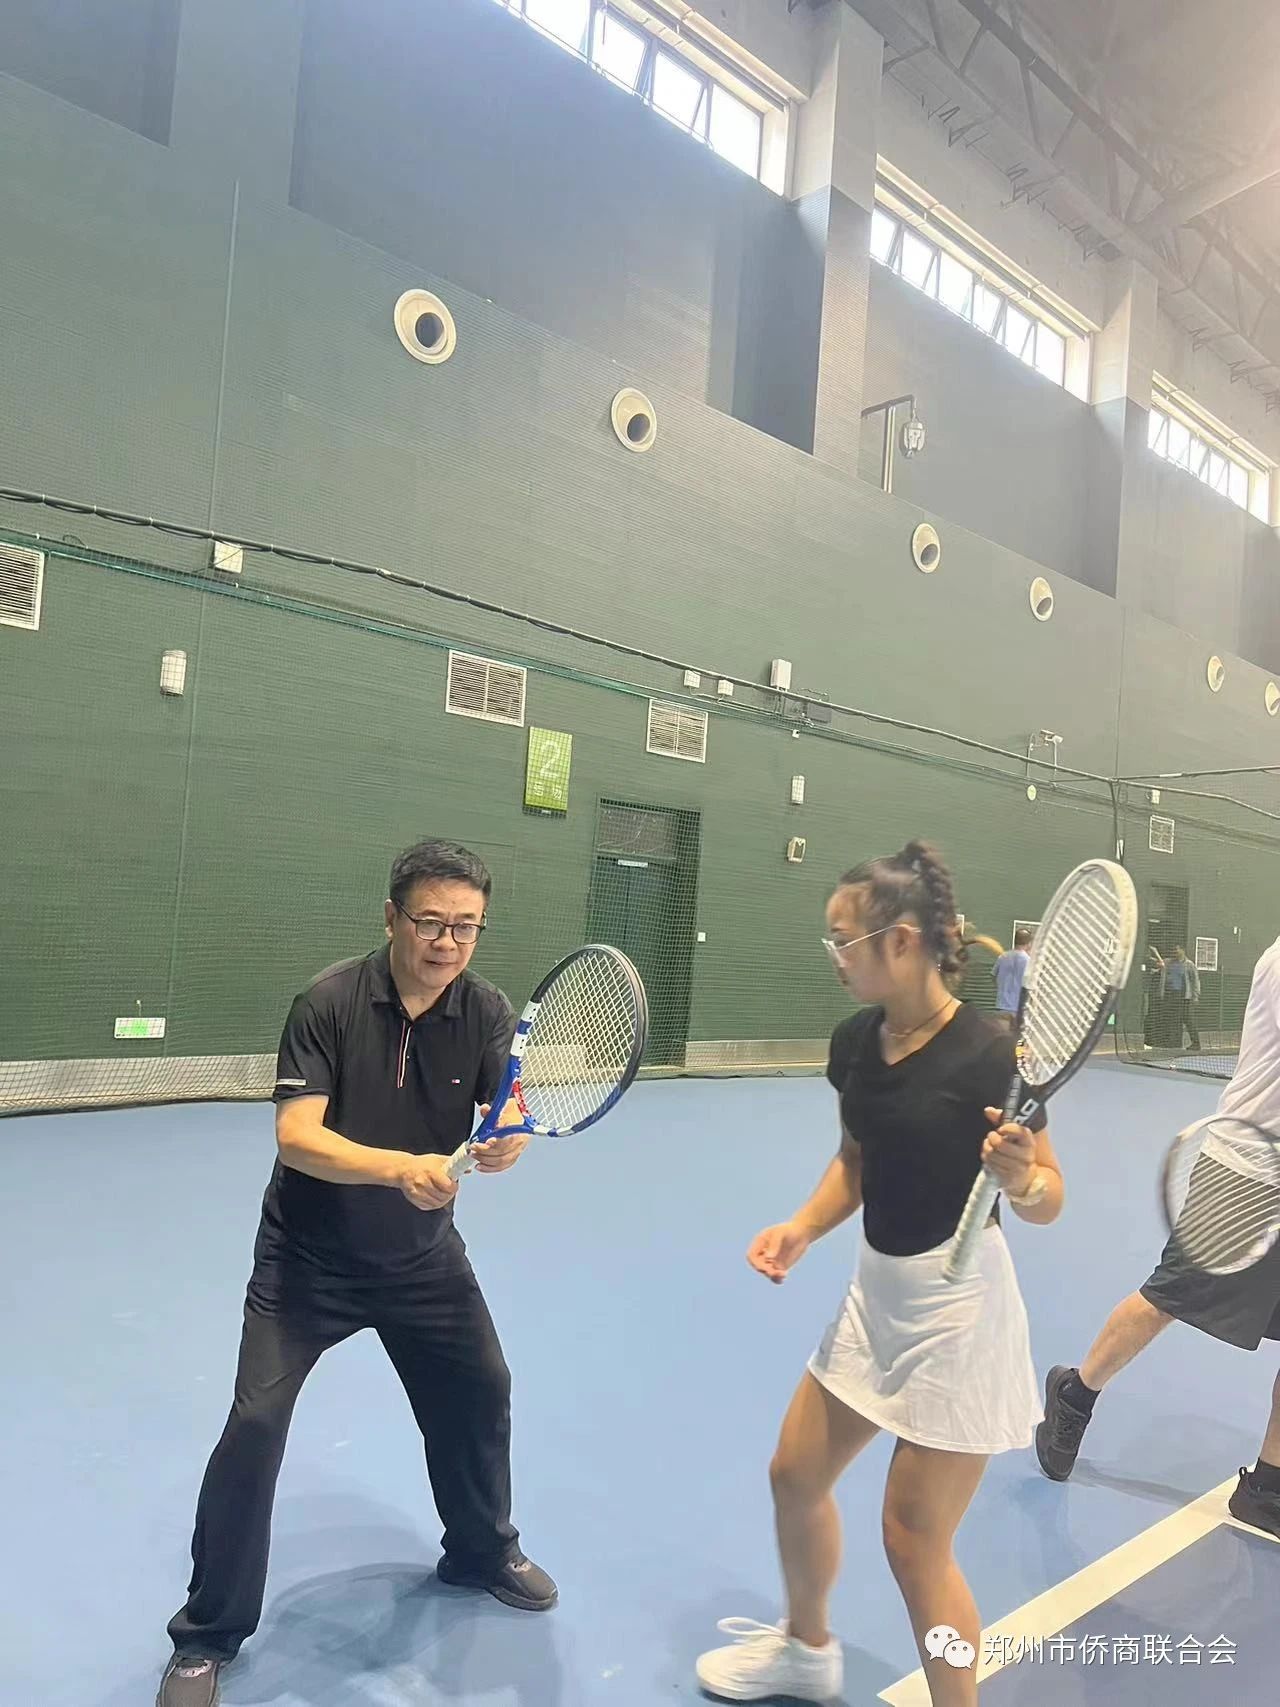 “以球会友 阳光运动”--郑州市侨商会开展会员网球体验活动